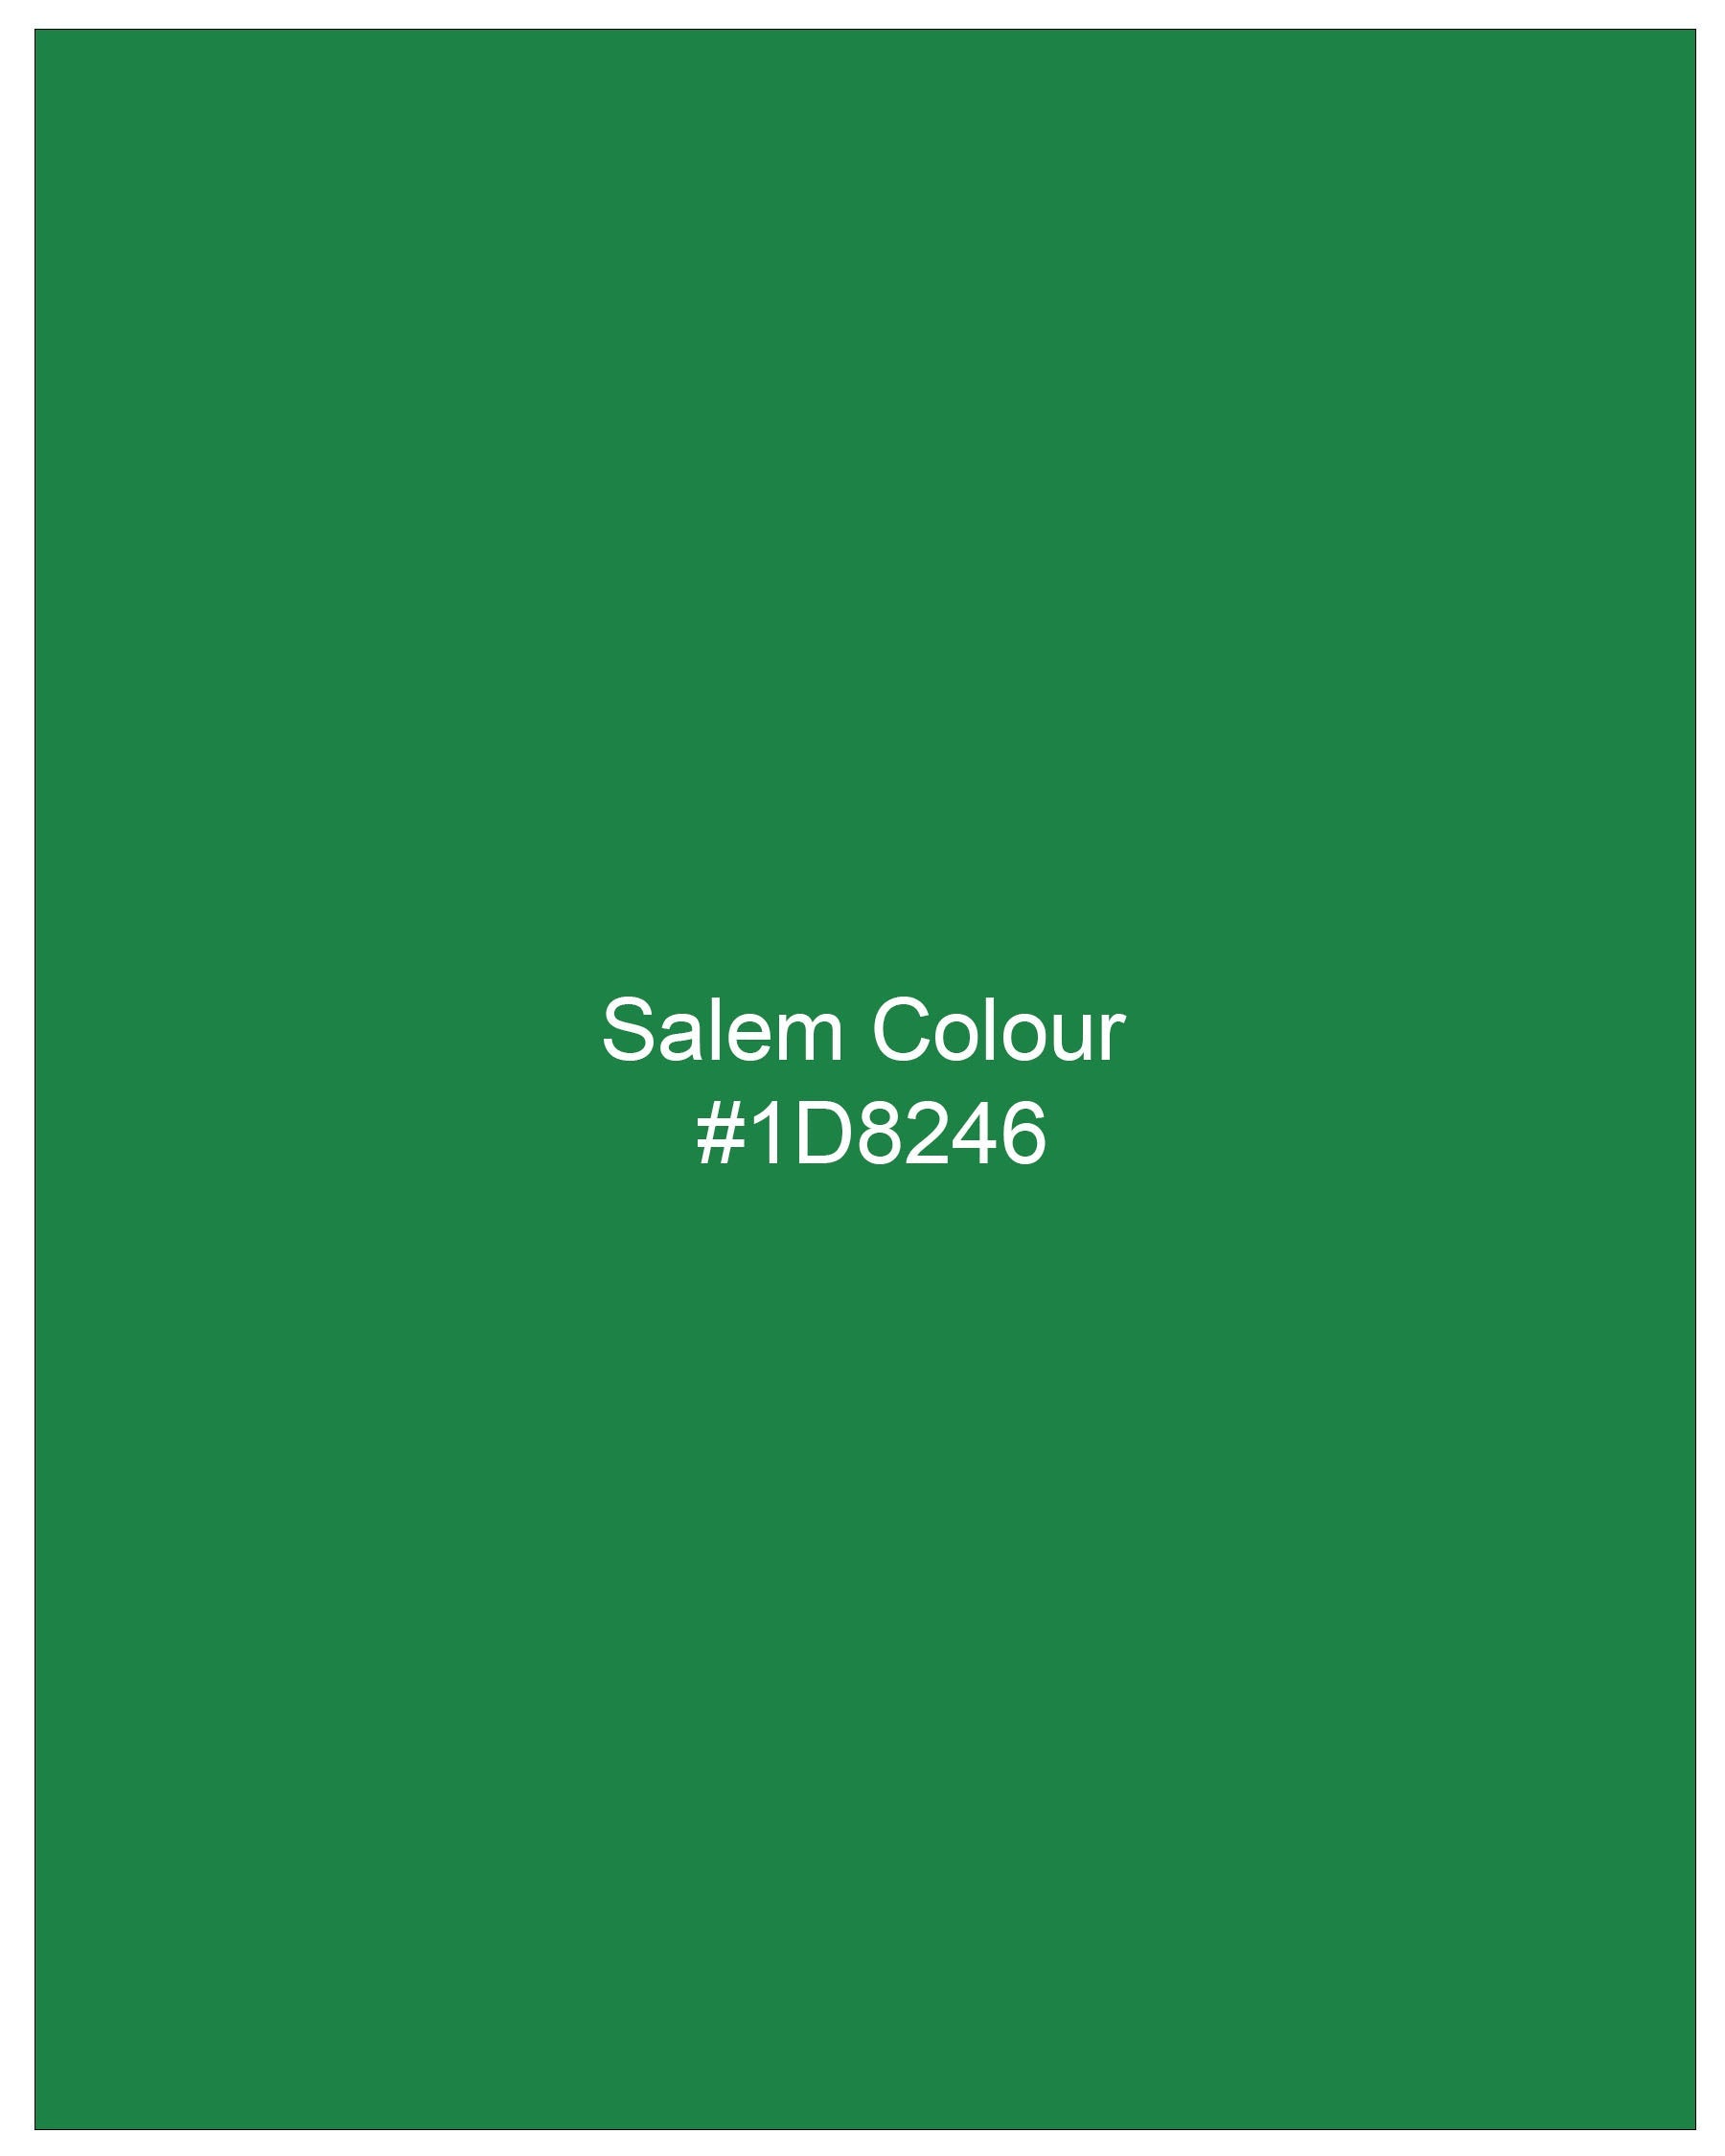 Salem Green Luxurious Linen Mandarin Collar Shirt 7944-M-P-38,7944-M-P-H-38,7944-M-P-39,7944-M-P-H-39,7944-M-P-40,7944-M-P-H-40,7944-M-P-42,7944-M-P-H-42,7944-M-P-44,7944-M-P-H-44,7944-M-P-46,7944-M-P-H-46,7944-M-P-48,7944-M-P-H-48,7944-M-P-50,7944-M-P-H-50,7944-M-P-52,7944-M-P-H-52